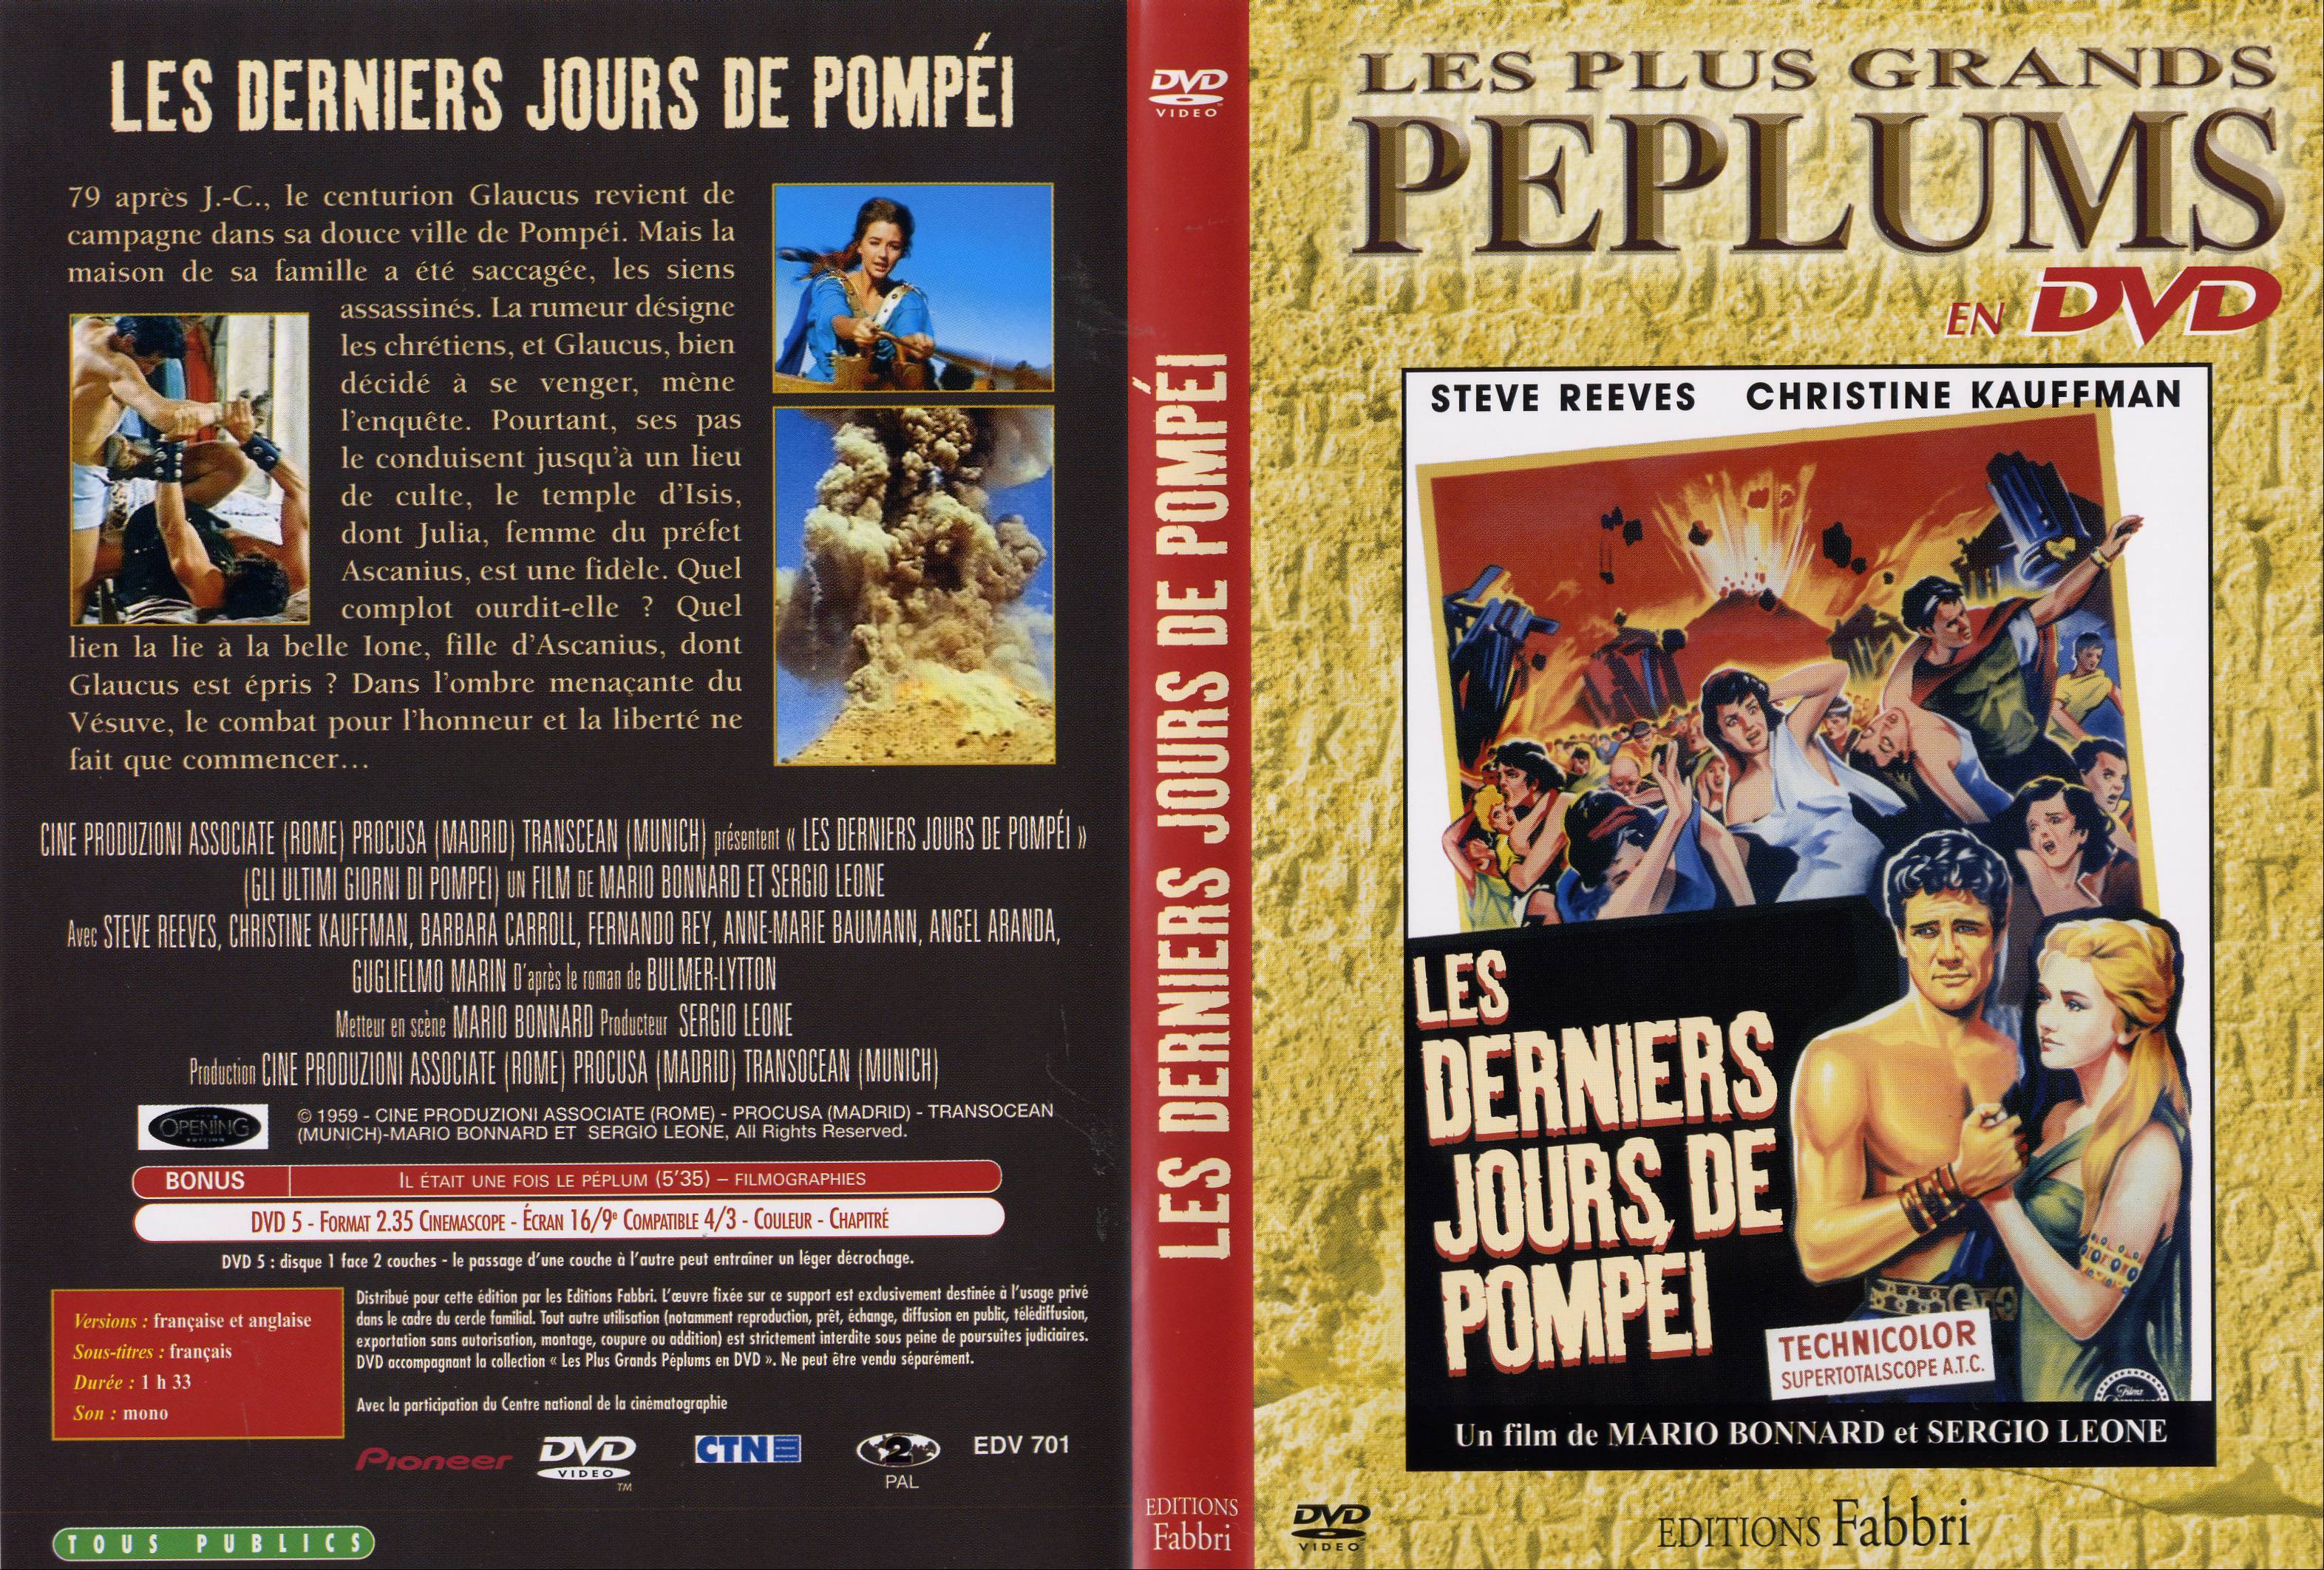 Jaquette DVD Les derniers jours de Pompei v2